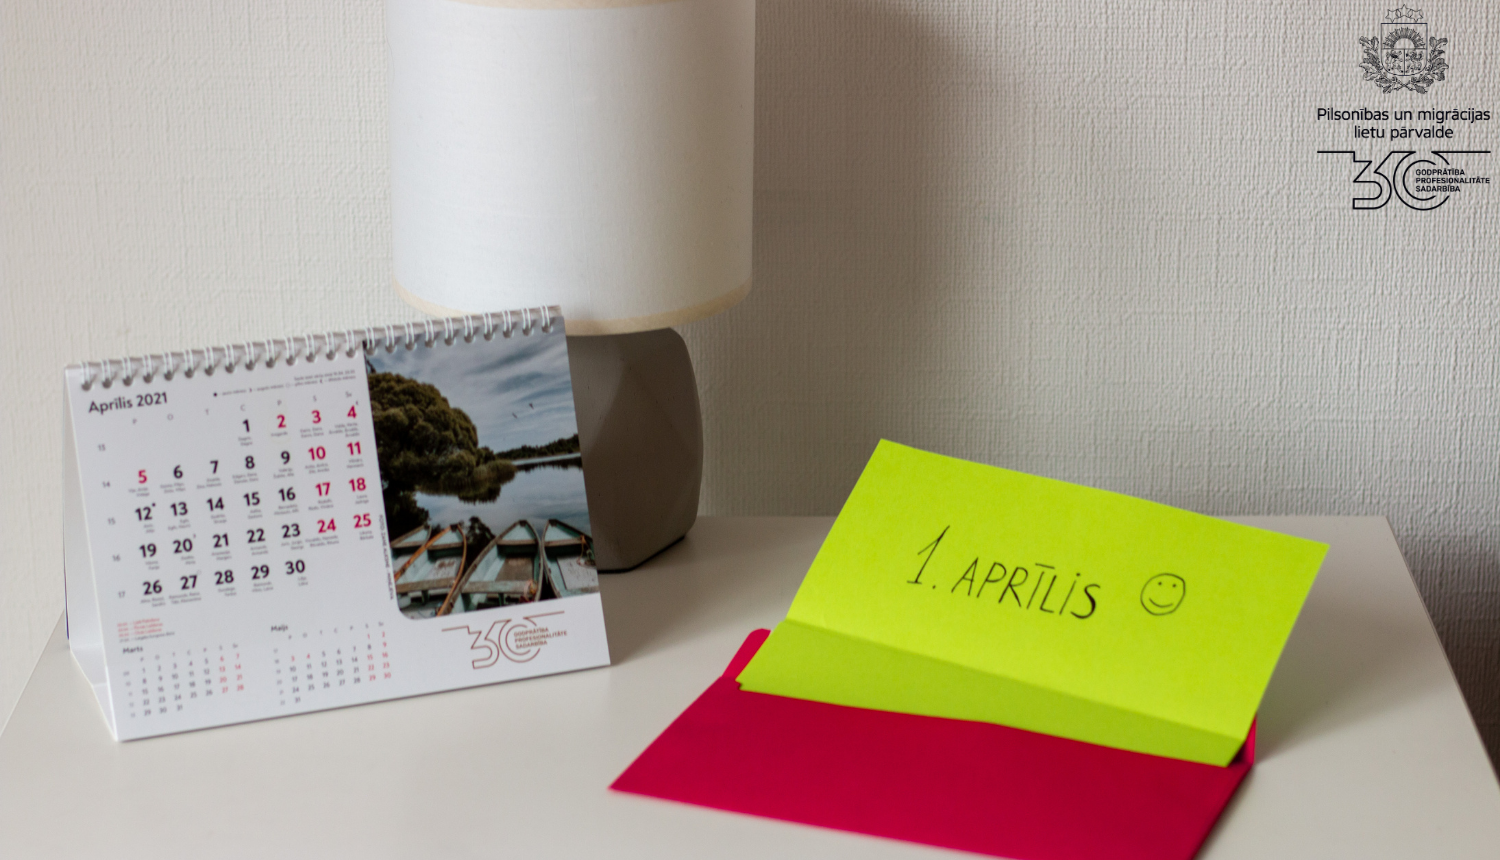 Kompoz'icija uz galda: galda kalendārs un līmlapiņā spilgti dzeltenā kr;as;a ar uzrakstu "1. aprīli :)"